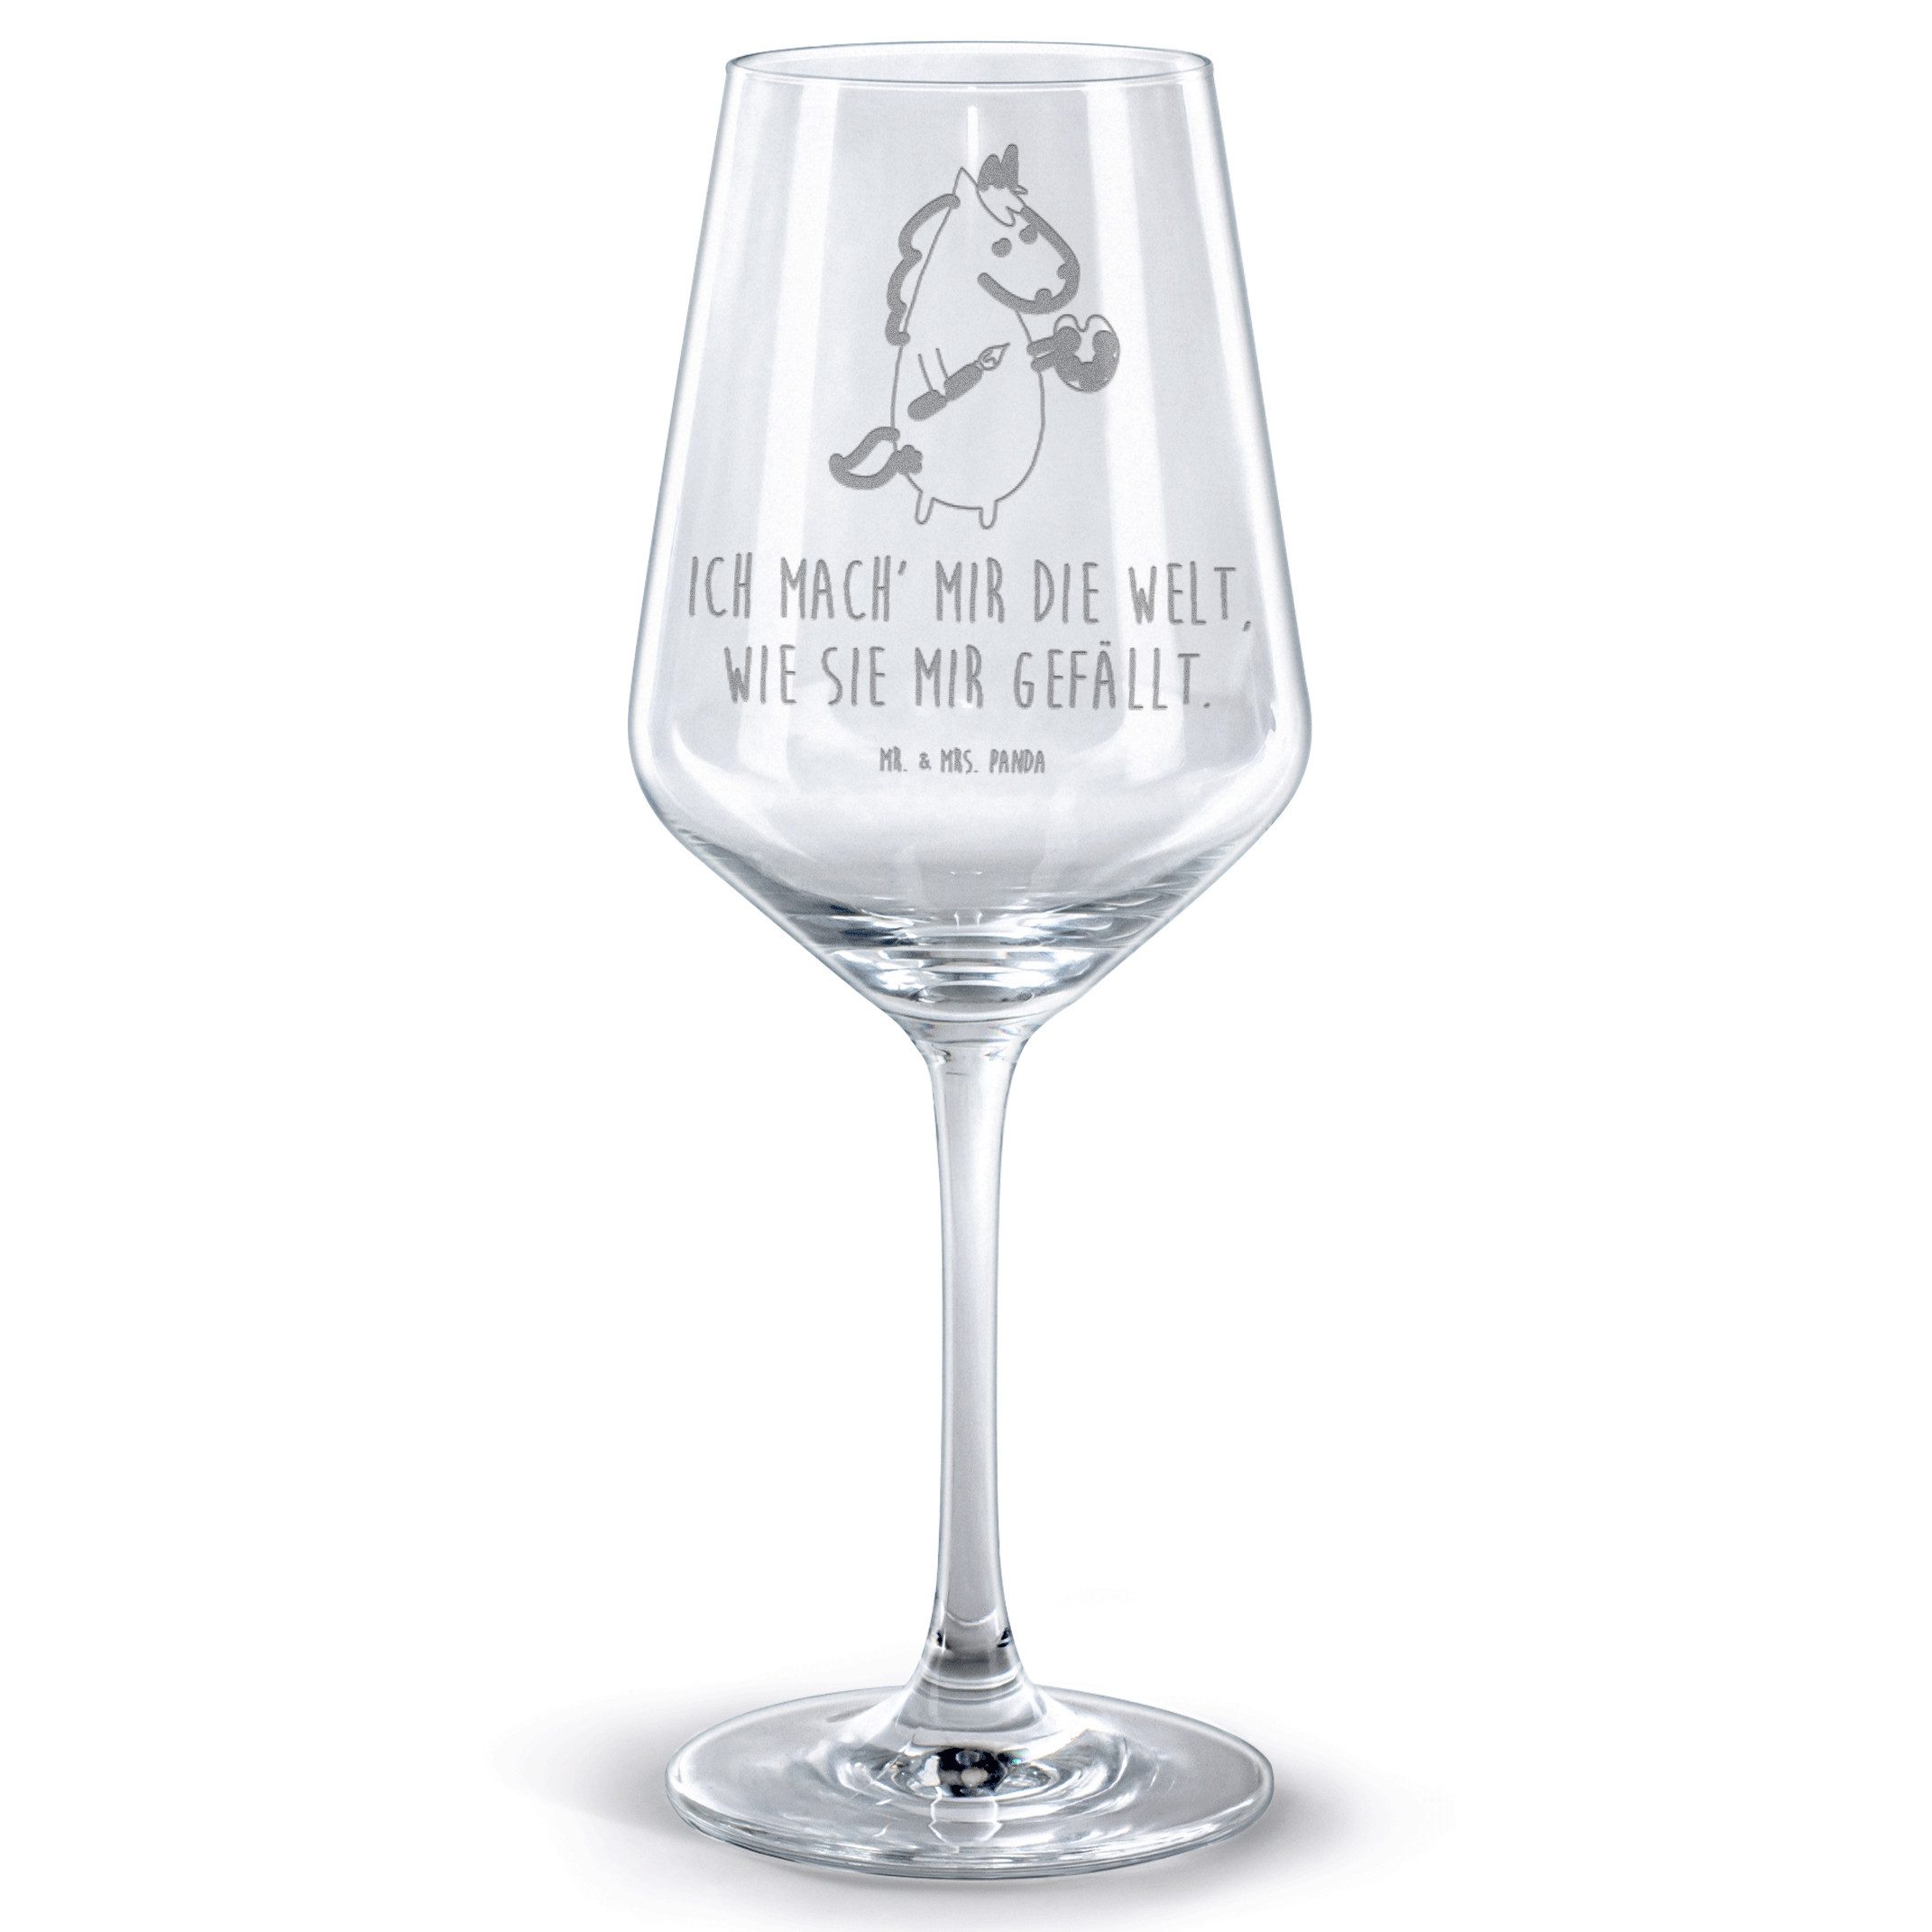 Mr. & Mrs. Panda Rotweinglas Einhorn Künstler - Transparent - Geschenk, Unicorn, Weinglas mit Grav, Premium Glas, Luxuriöse Gravur